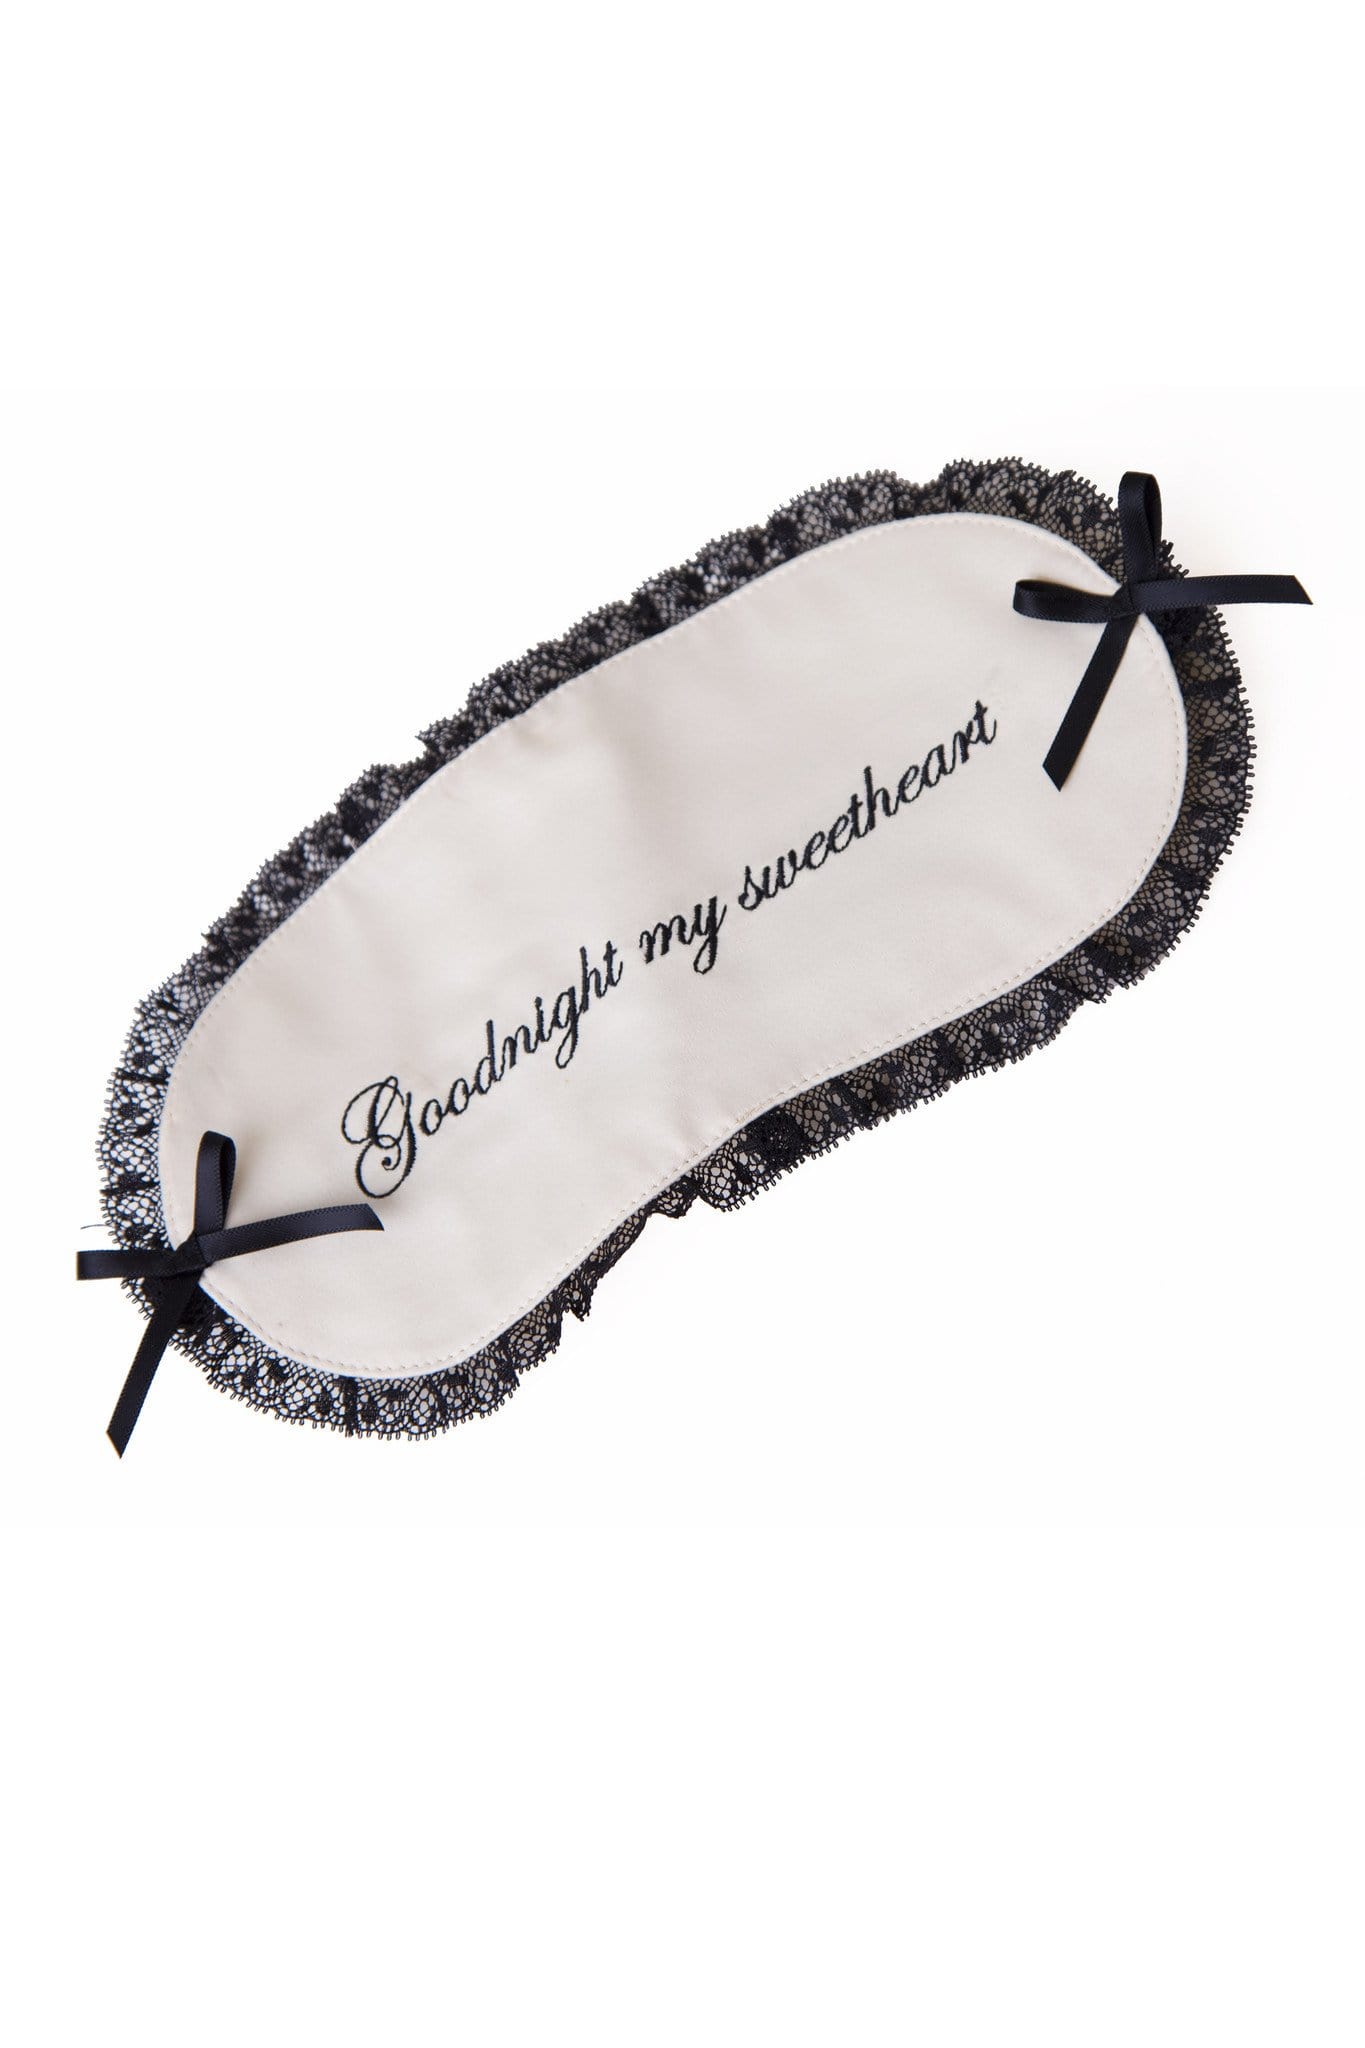 ivory black embroidered eye mask sleep black bridal gift lace